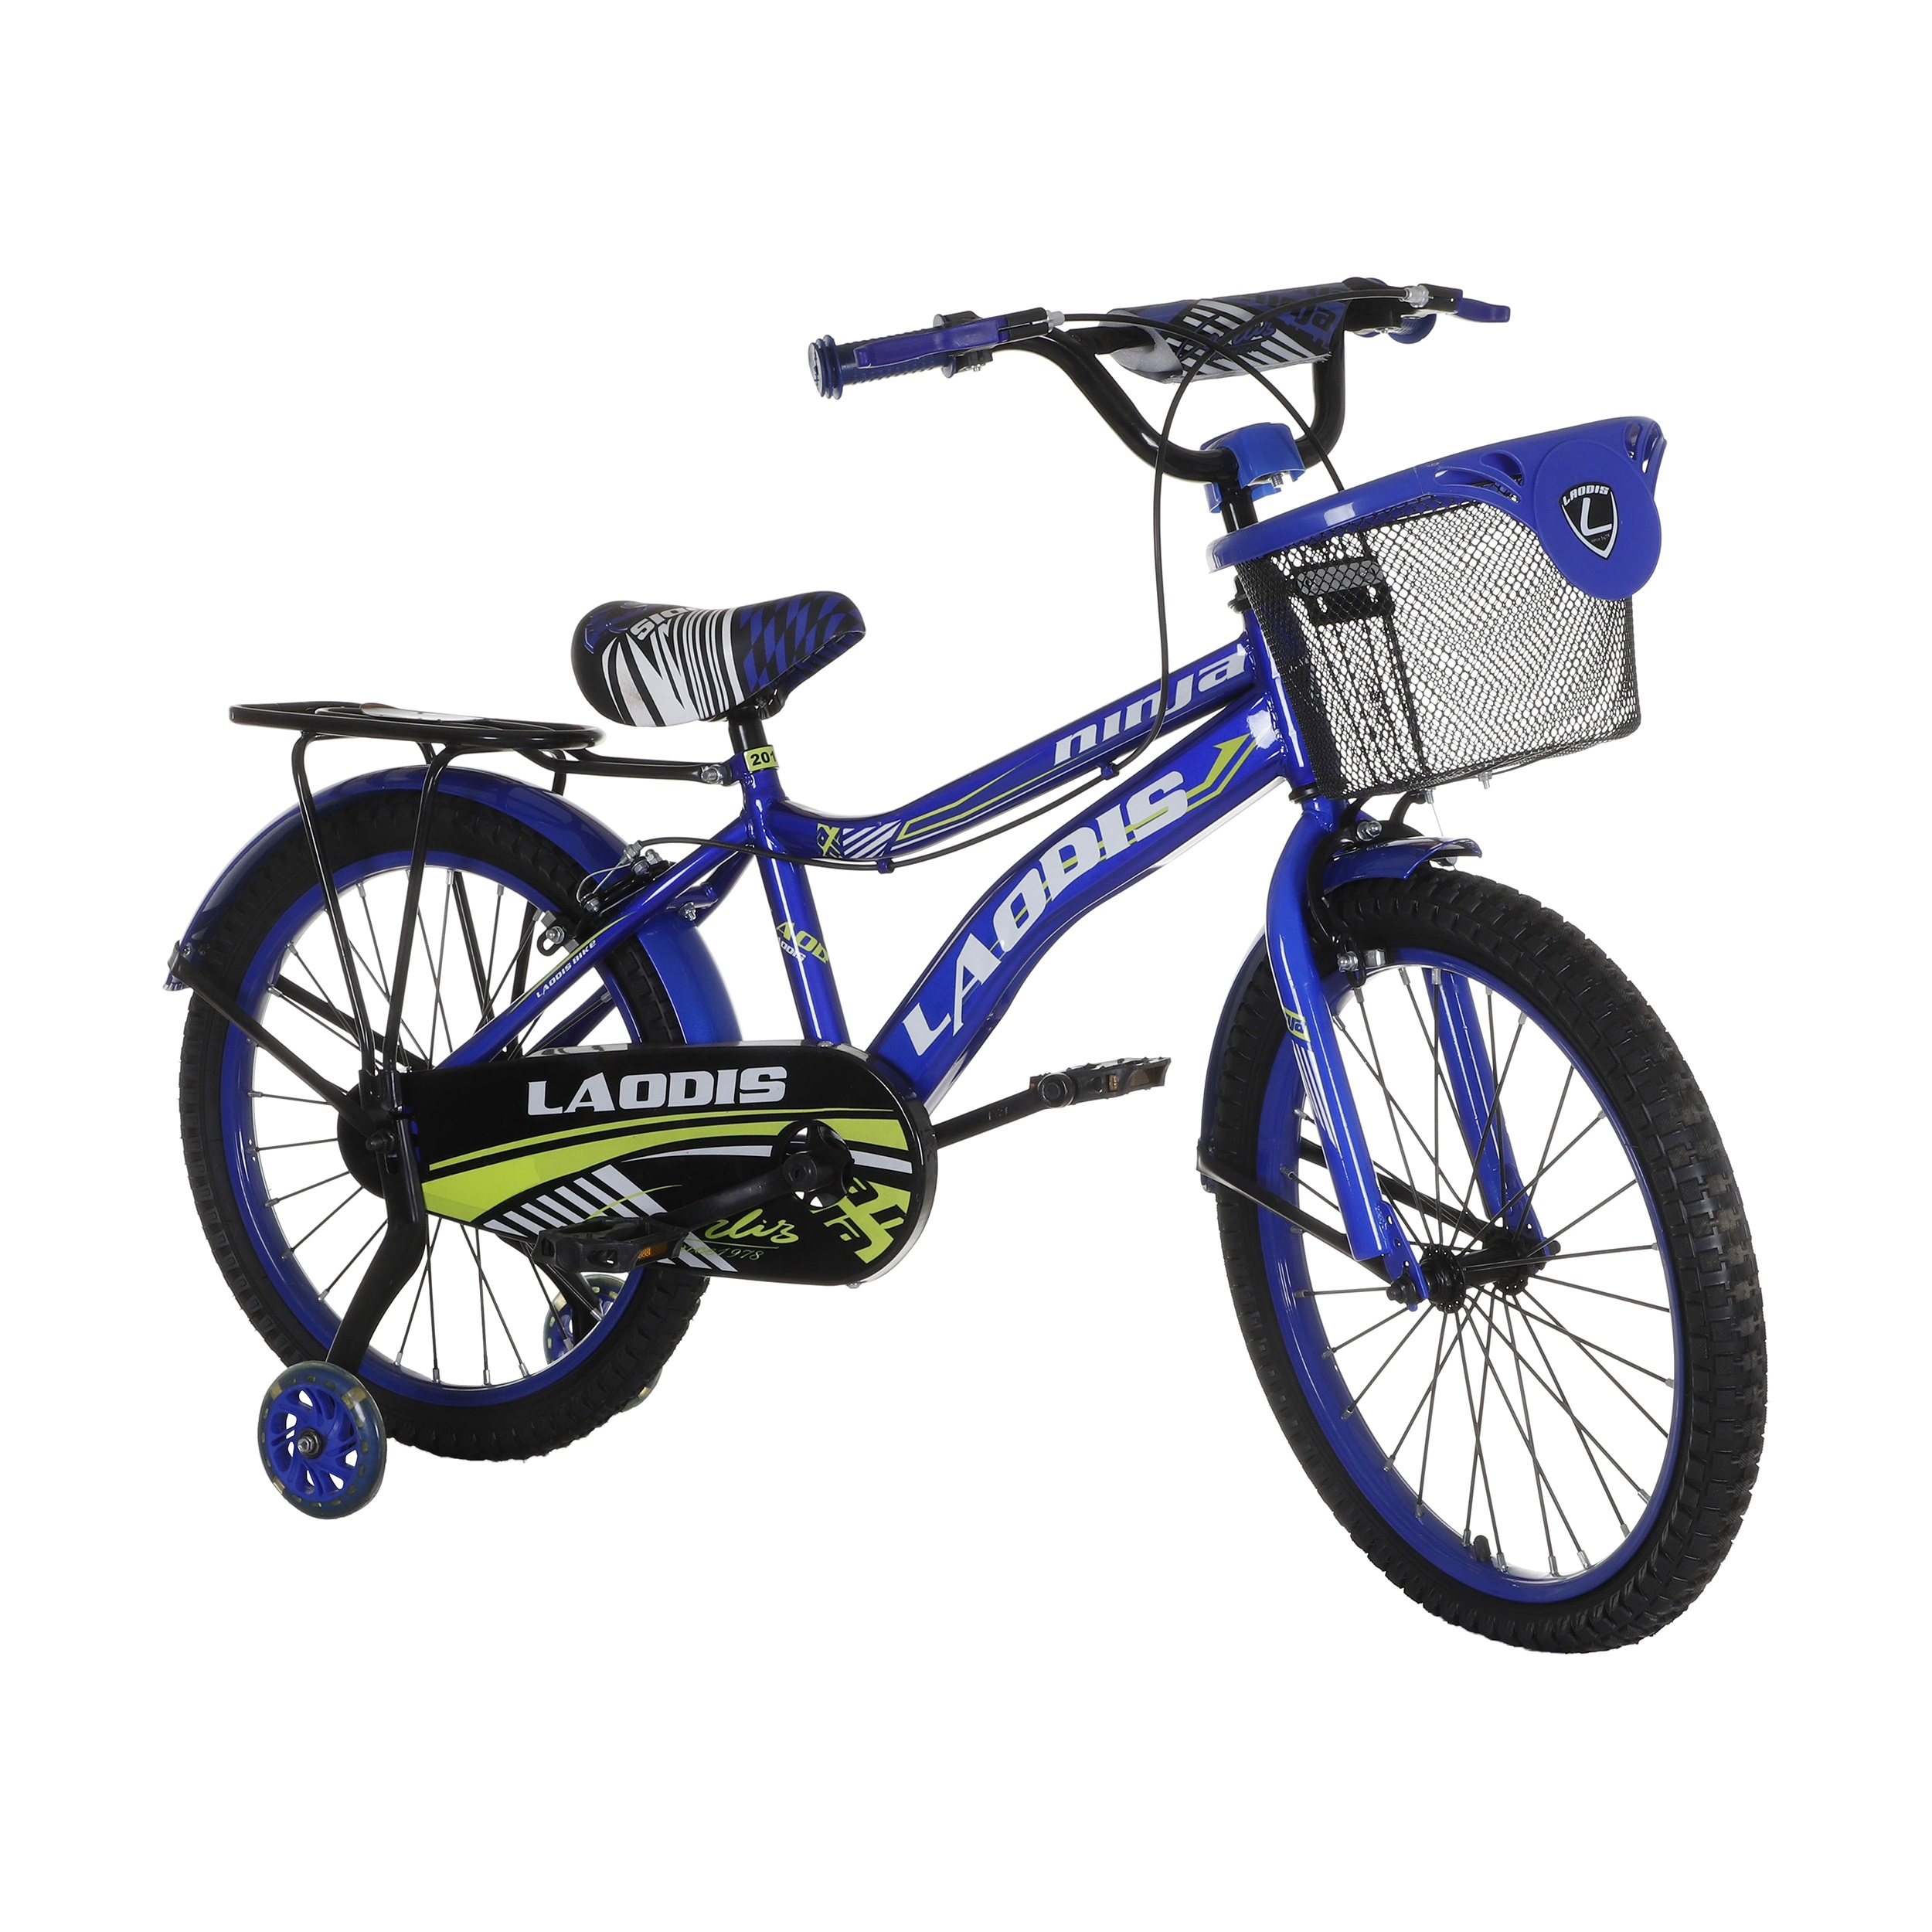 نکته خرید - قیمت روز دوچرخه شهری لاودیس مدل 20133 کد 002 سایز 20 خرید